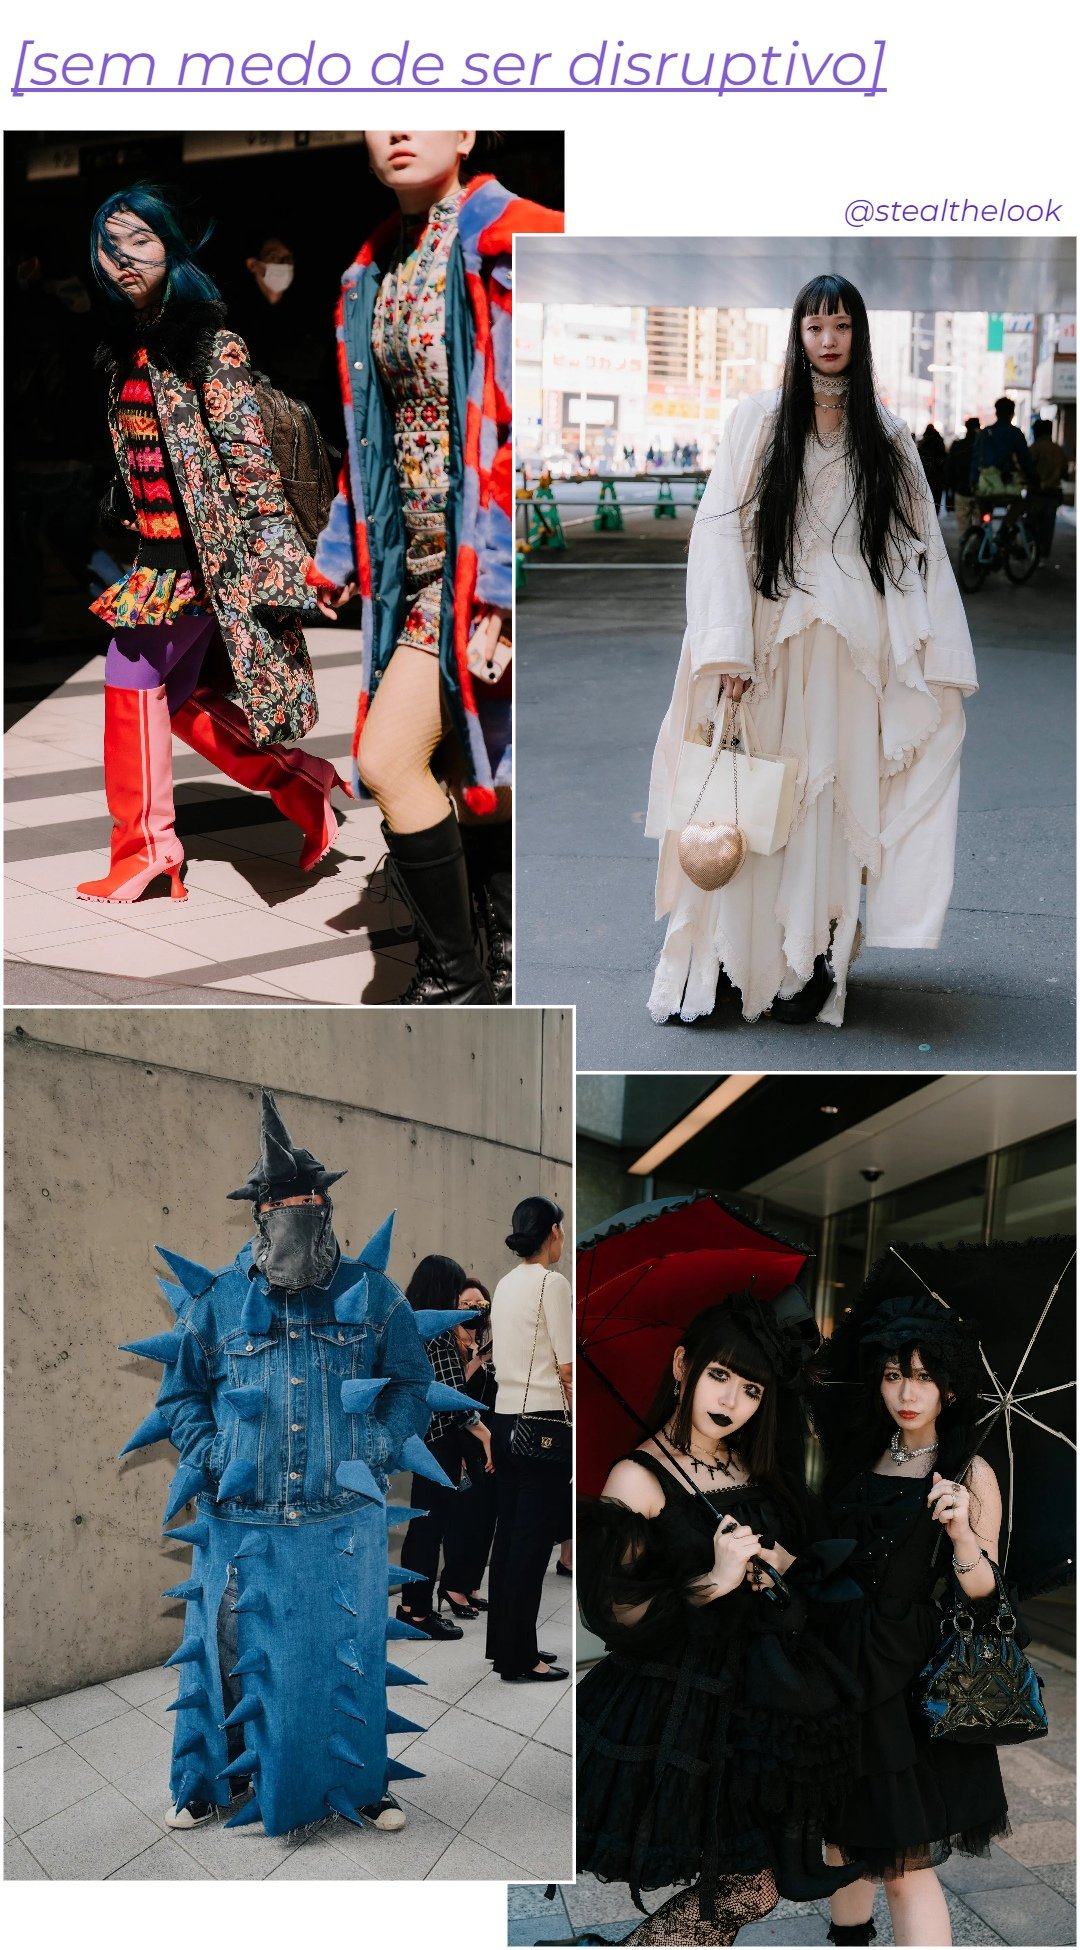 Street Style asiático - roupas diversas - Street Style asiático - outono - colagem de imagens - https://stealthelook.com.br